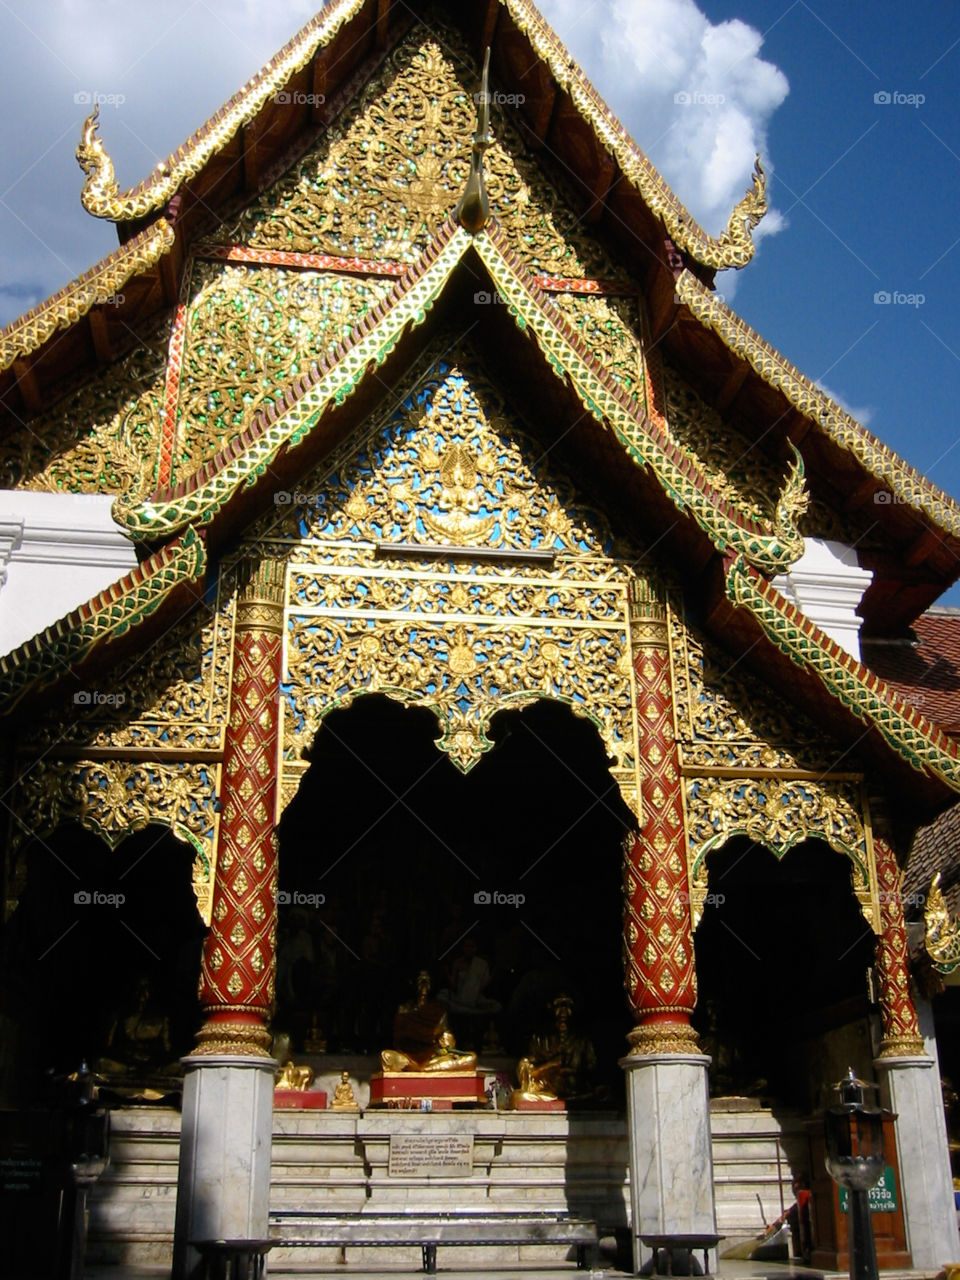 A Wat in Northern Thailand